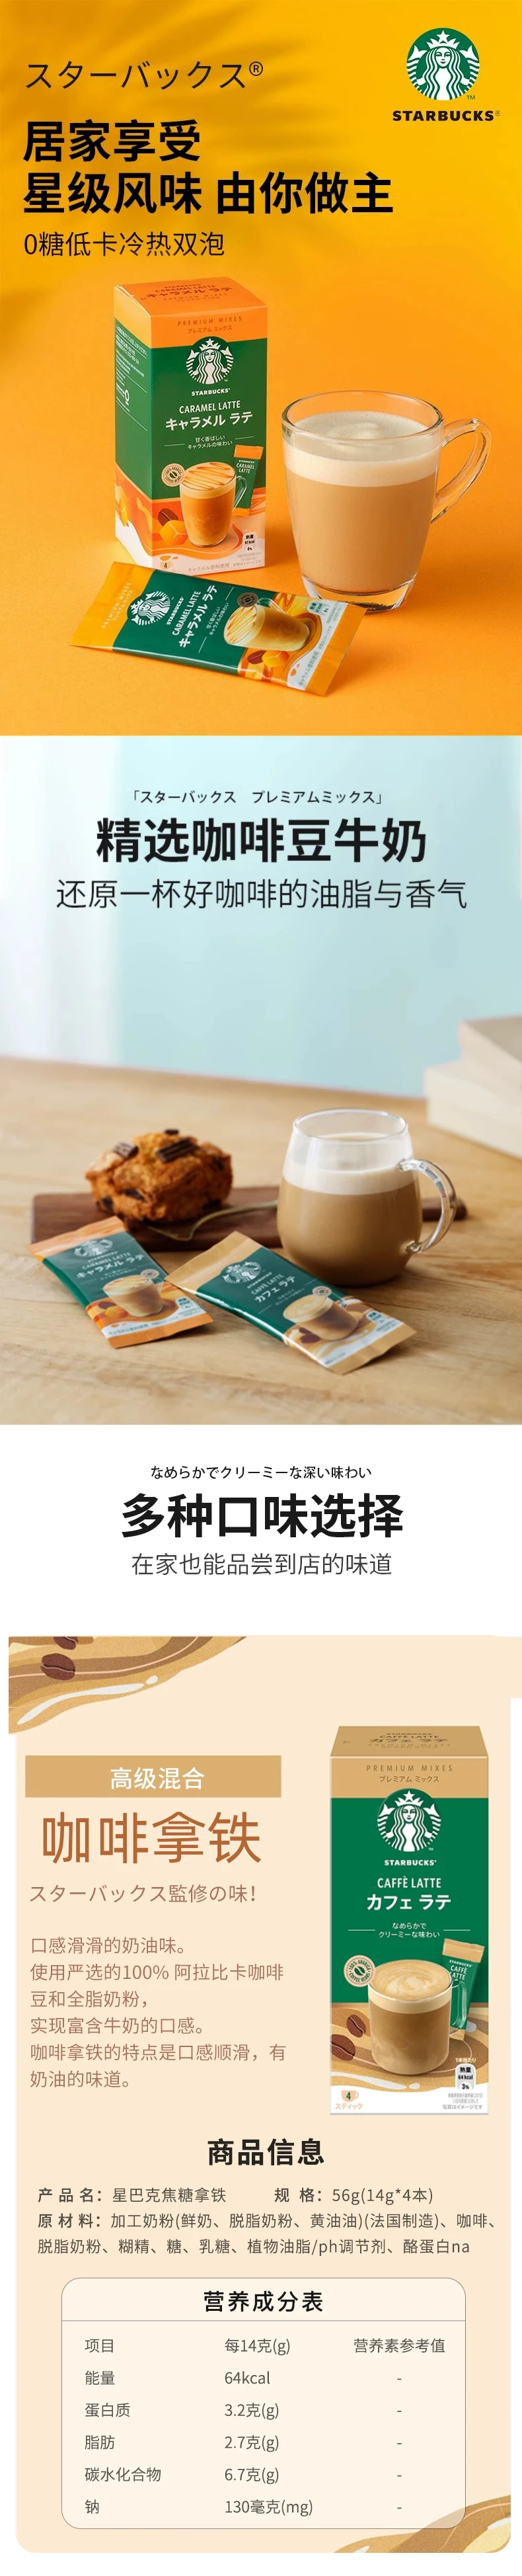 【日本直邮】日本 STARBUCKS星巴克 速溶咖啡拿铁咖啡粉 4袋入